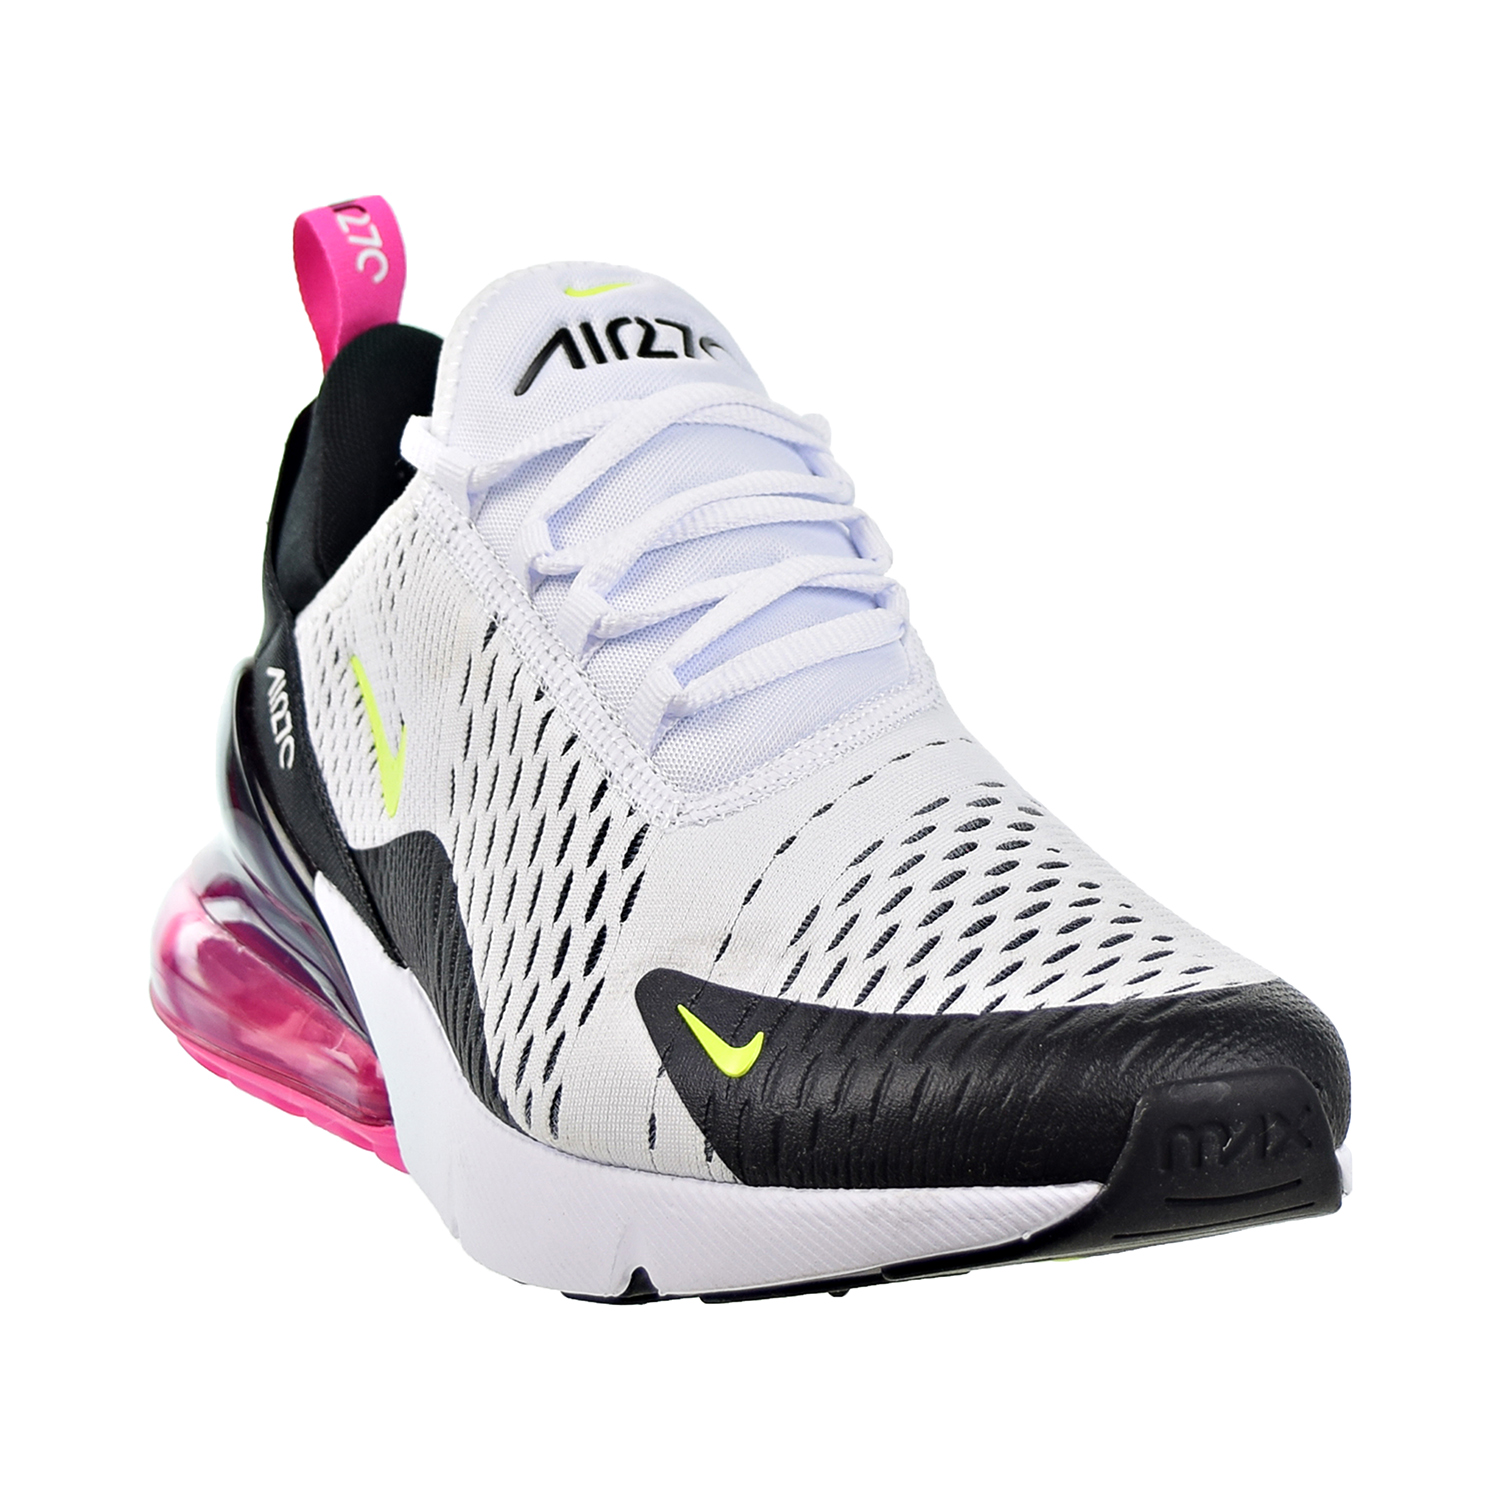 Nike Air Max 270 Mens Shoes White/Volt/Black/Laser Fuchsia ah8050-109